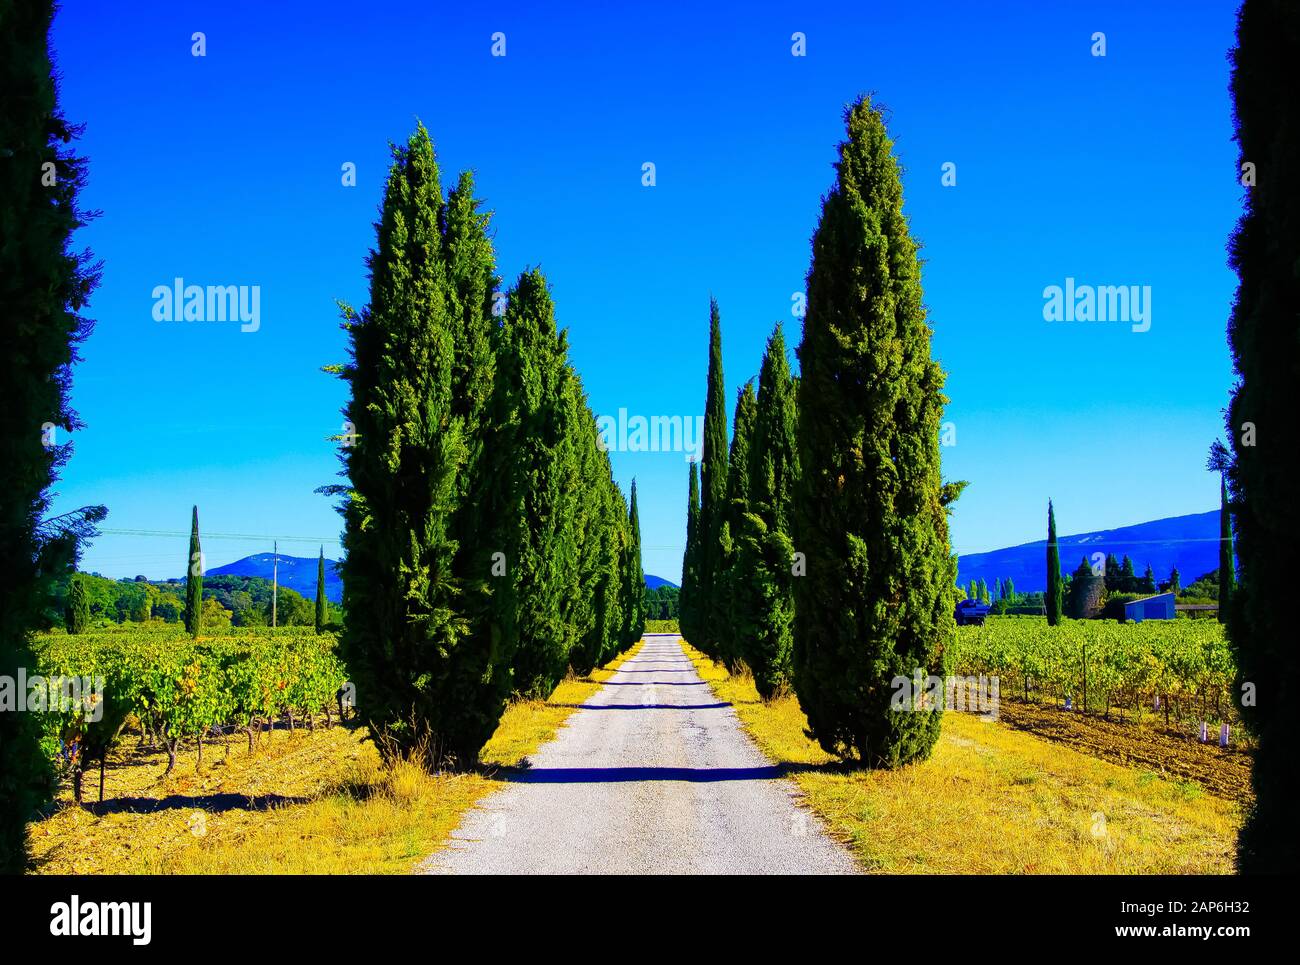 Vue sur le chemin agricole à travers le vignoble avec des vignes et des cyprès méditerranéens (cupressus sempervirens) dans une rangée contre les montagnes et le ciel bleu Banque D'Images